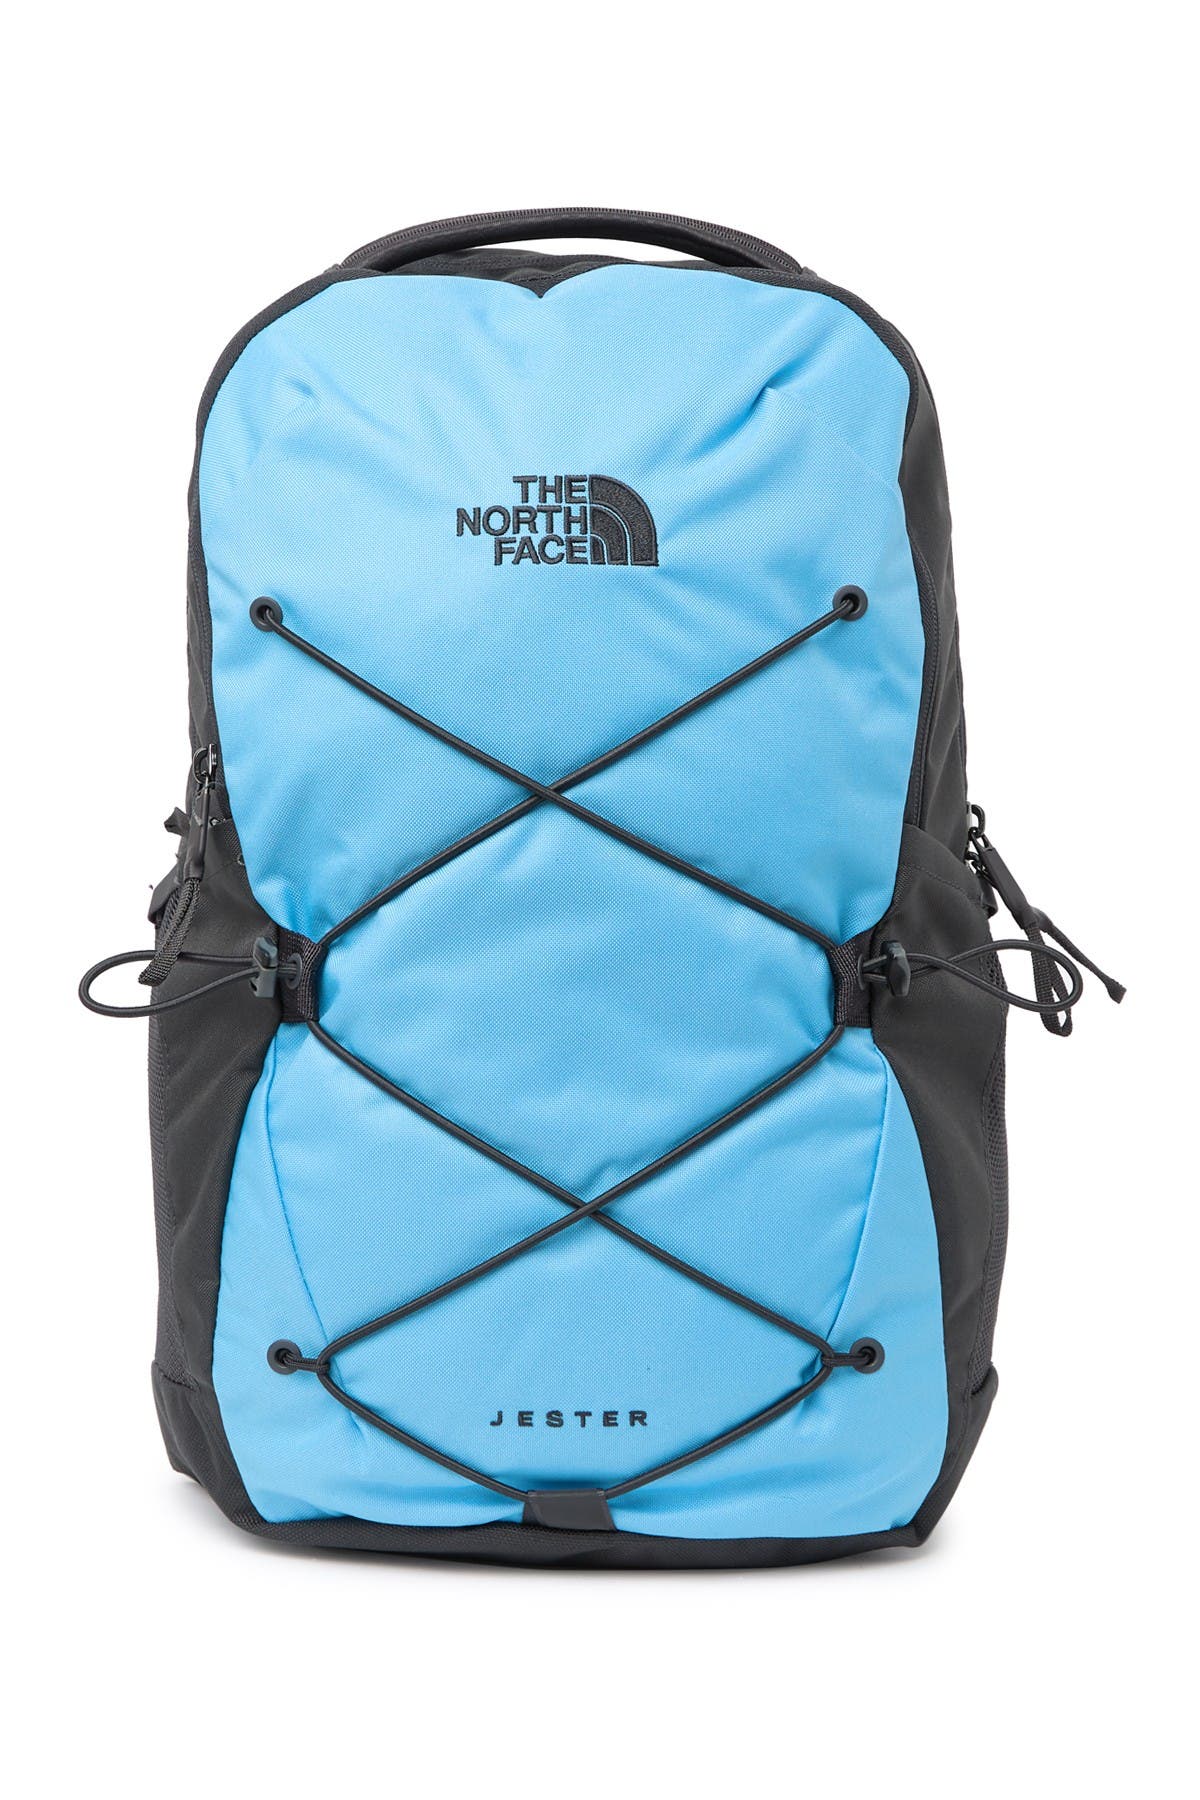 north face backpack nordstrom rack